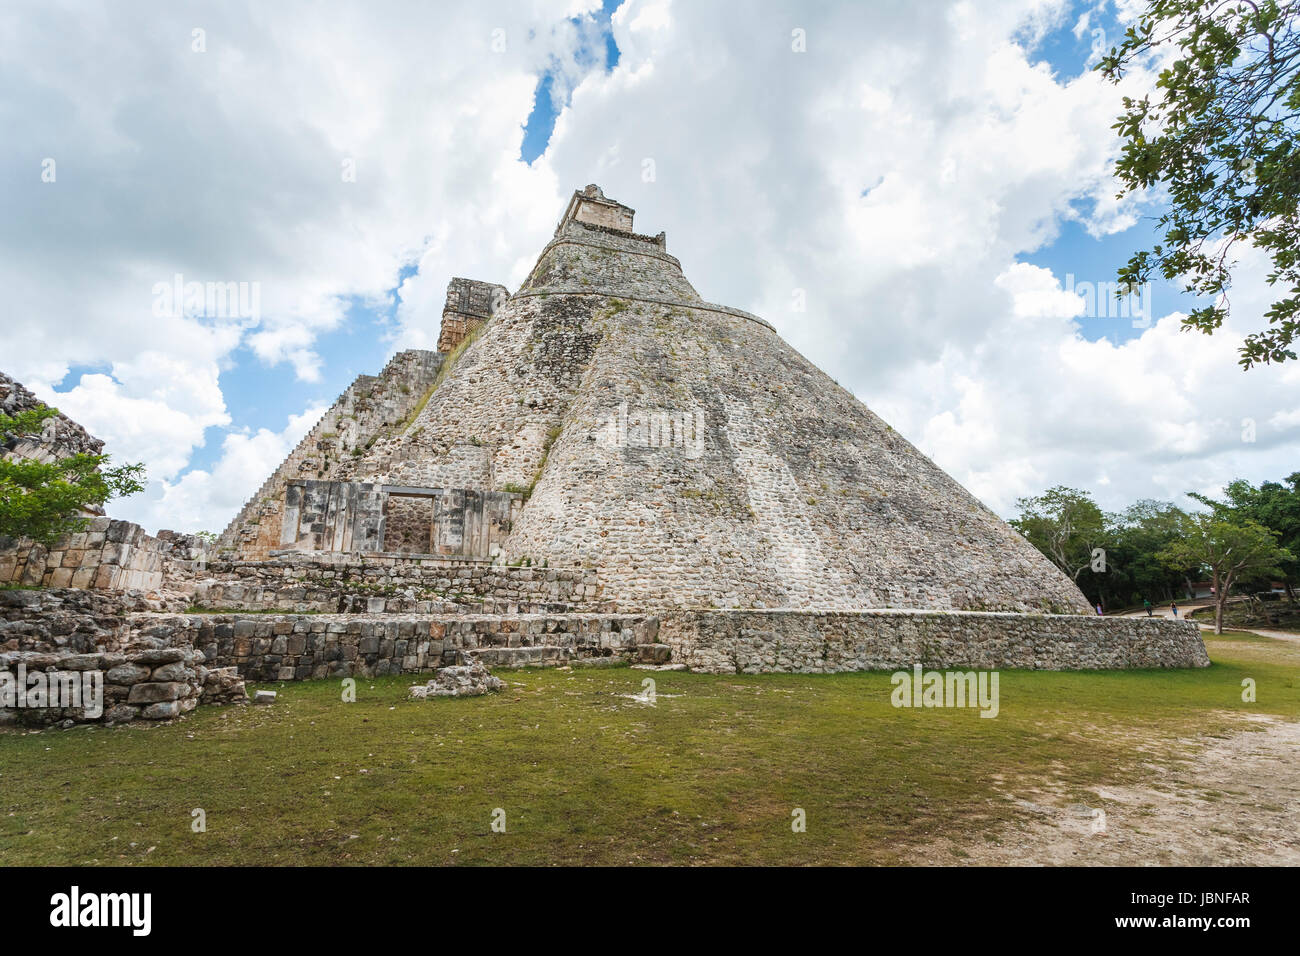 Pyramide der Magier, Uxmal, einer alten mittelamerikanischen Maya-Stadt und archäologische Stätte in der Nähe von Merida, Yucatan, Mexiko, ein UNESCO-Weltkulturerbe Stockfoto